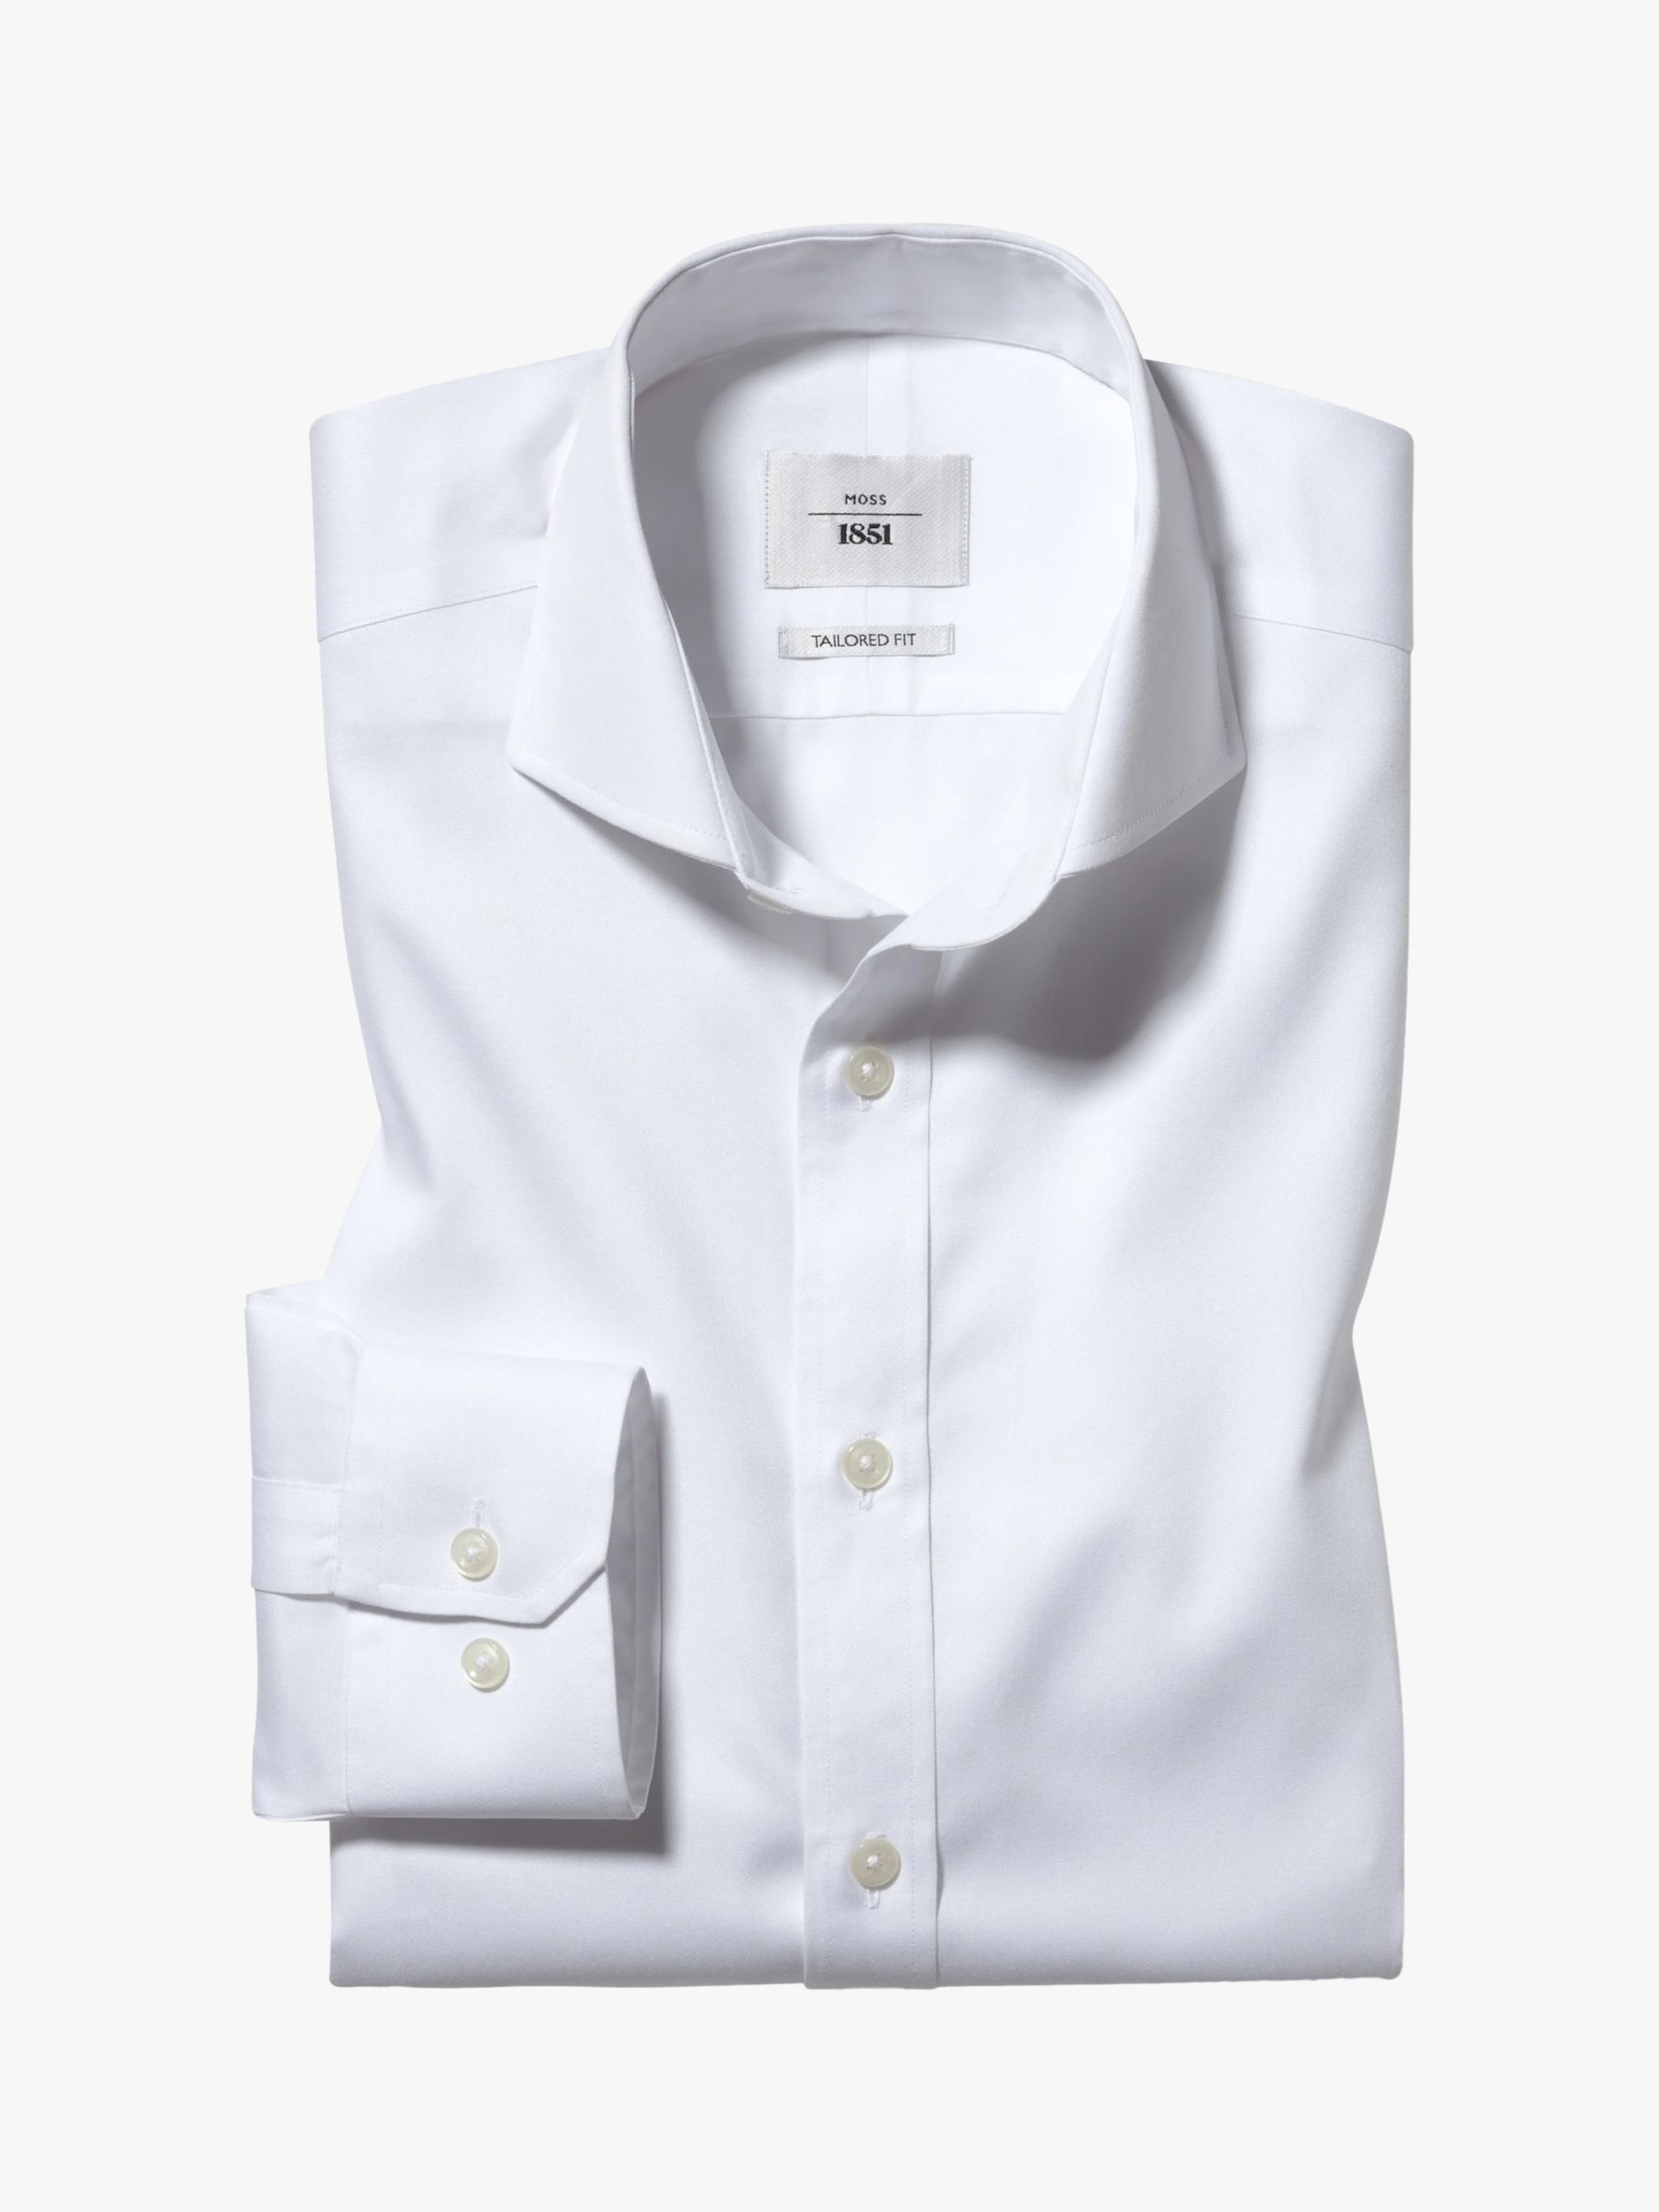 Рубашка из твила приталенного кроя Moss 1851 Zero Iron, белая эластичная рубашка приталенного кроя moss 1851 черная